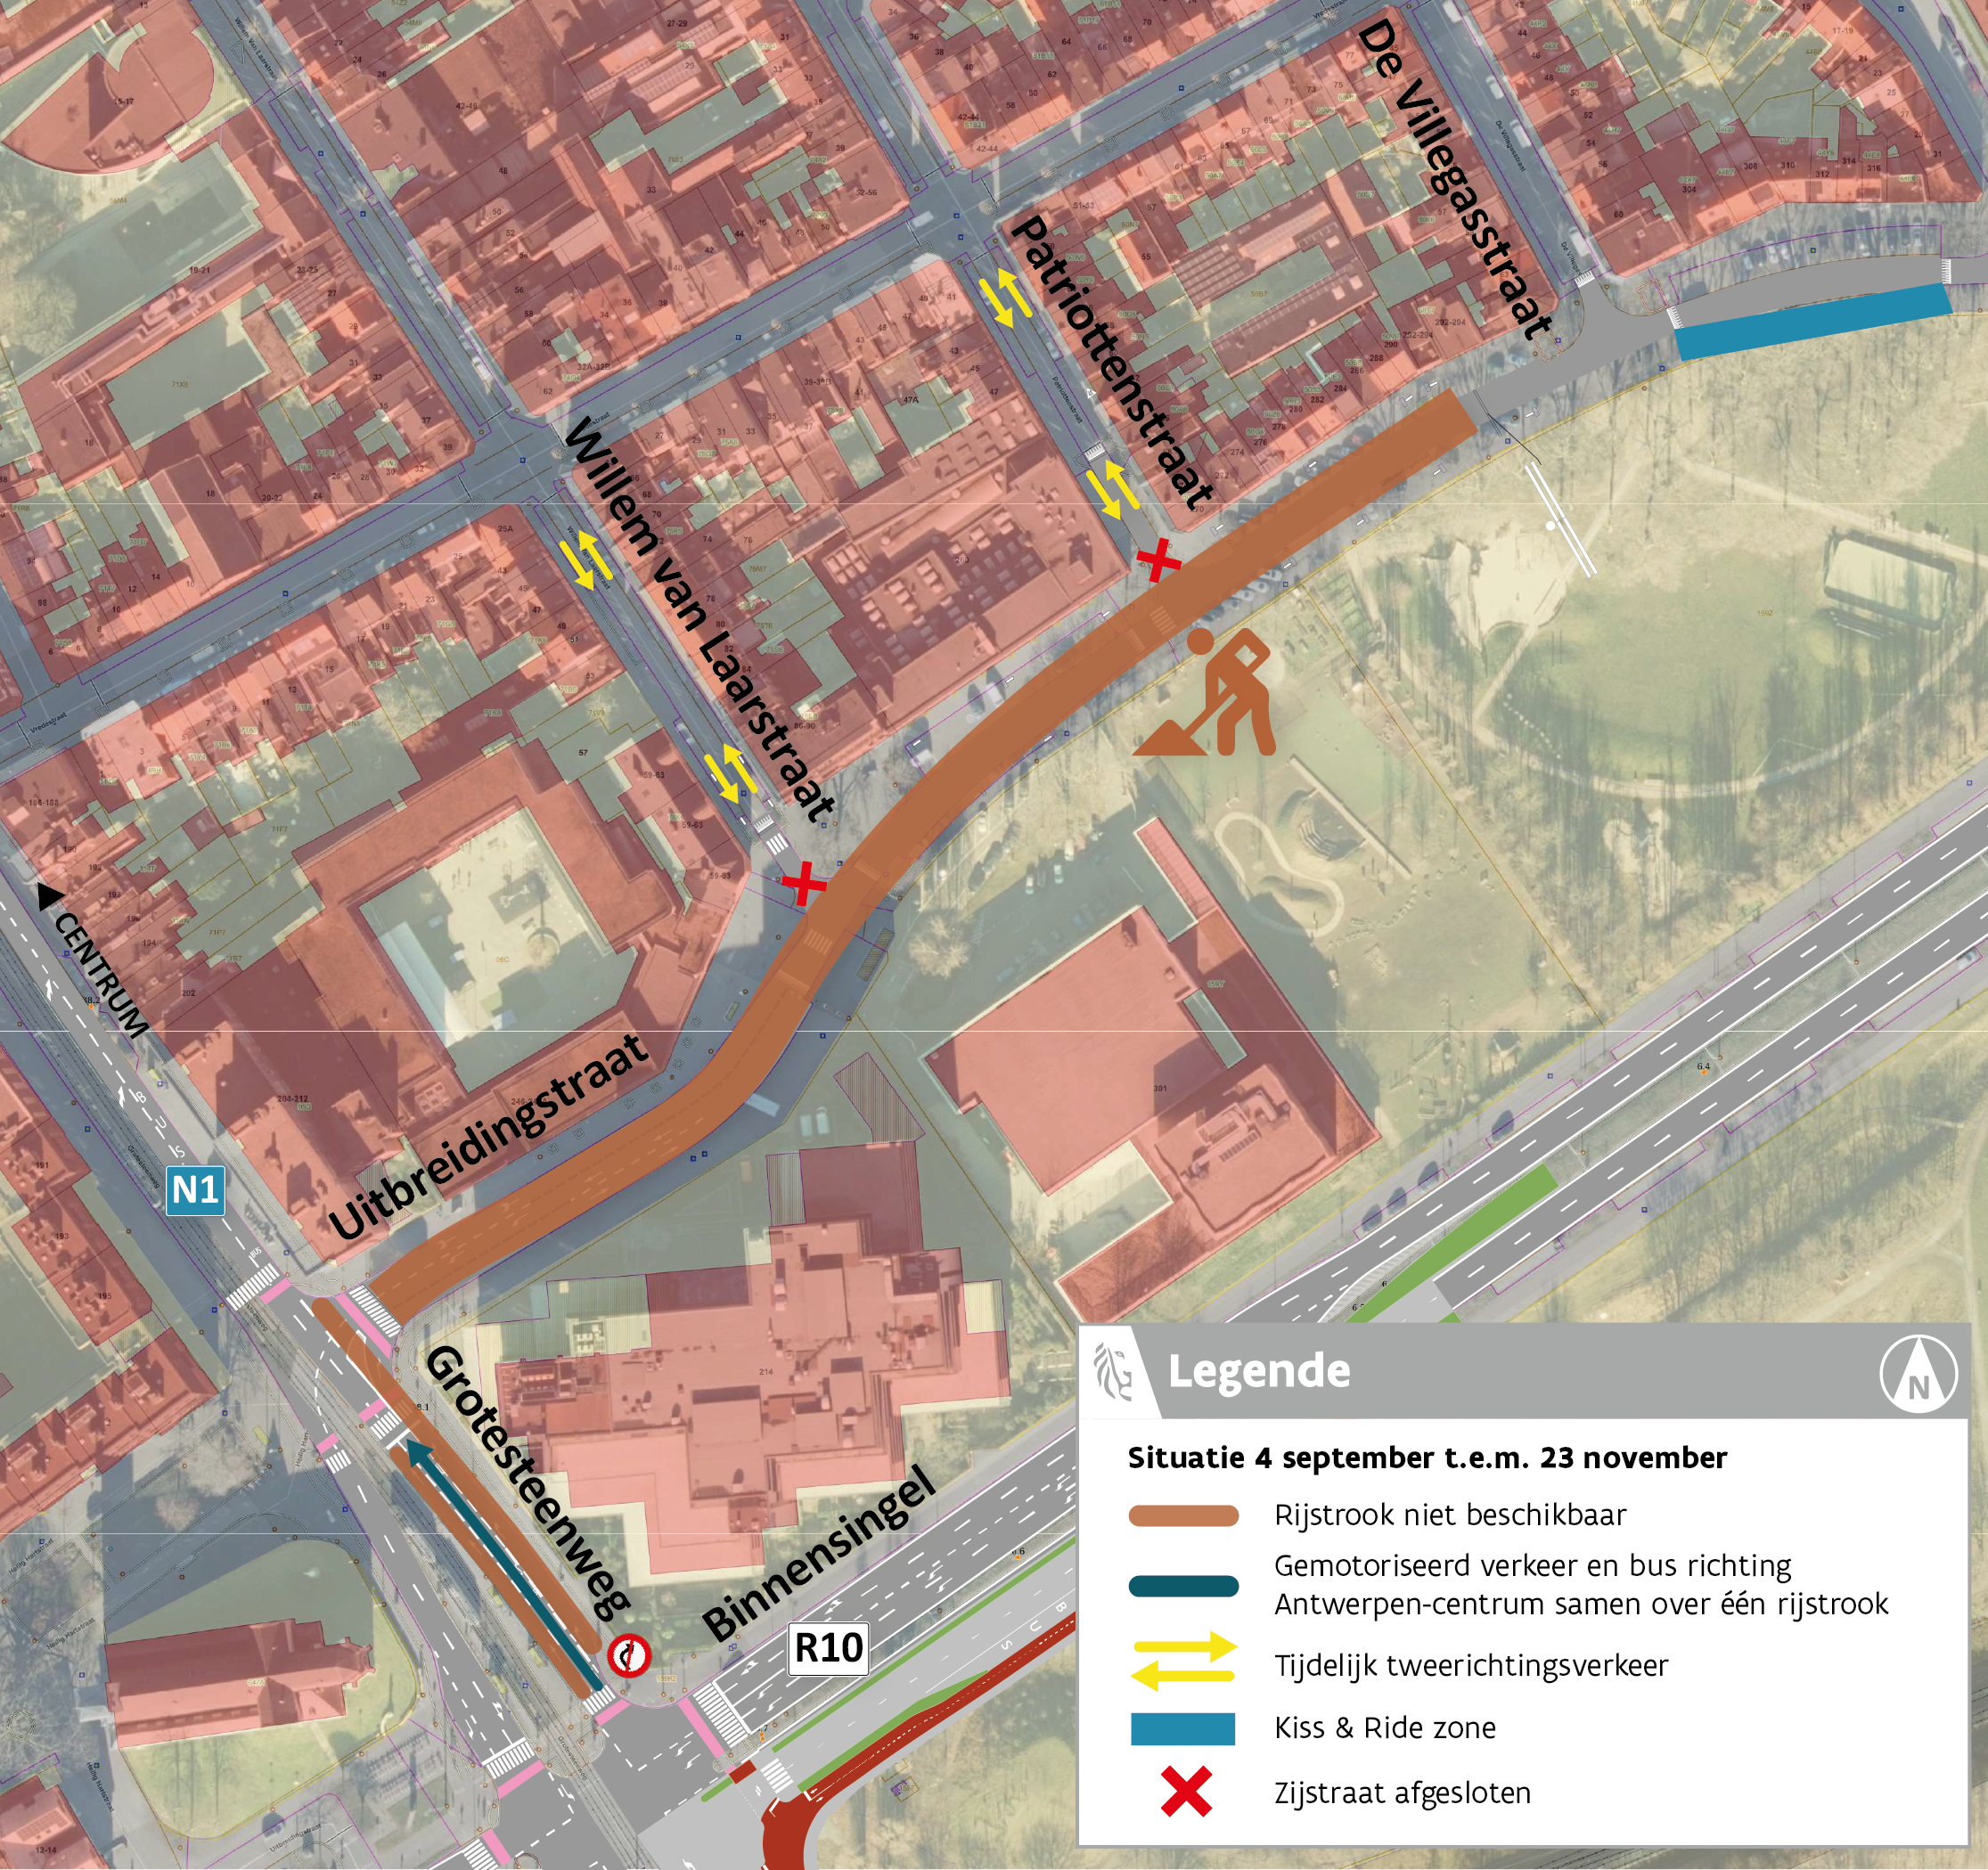 N1 Grotesteenweg - kruispunt met Uitbreidingstraat (van 4 september tot en met 20 november)